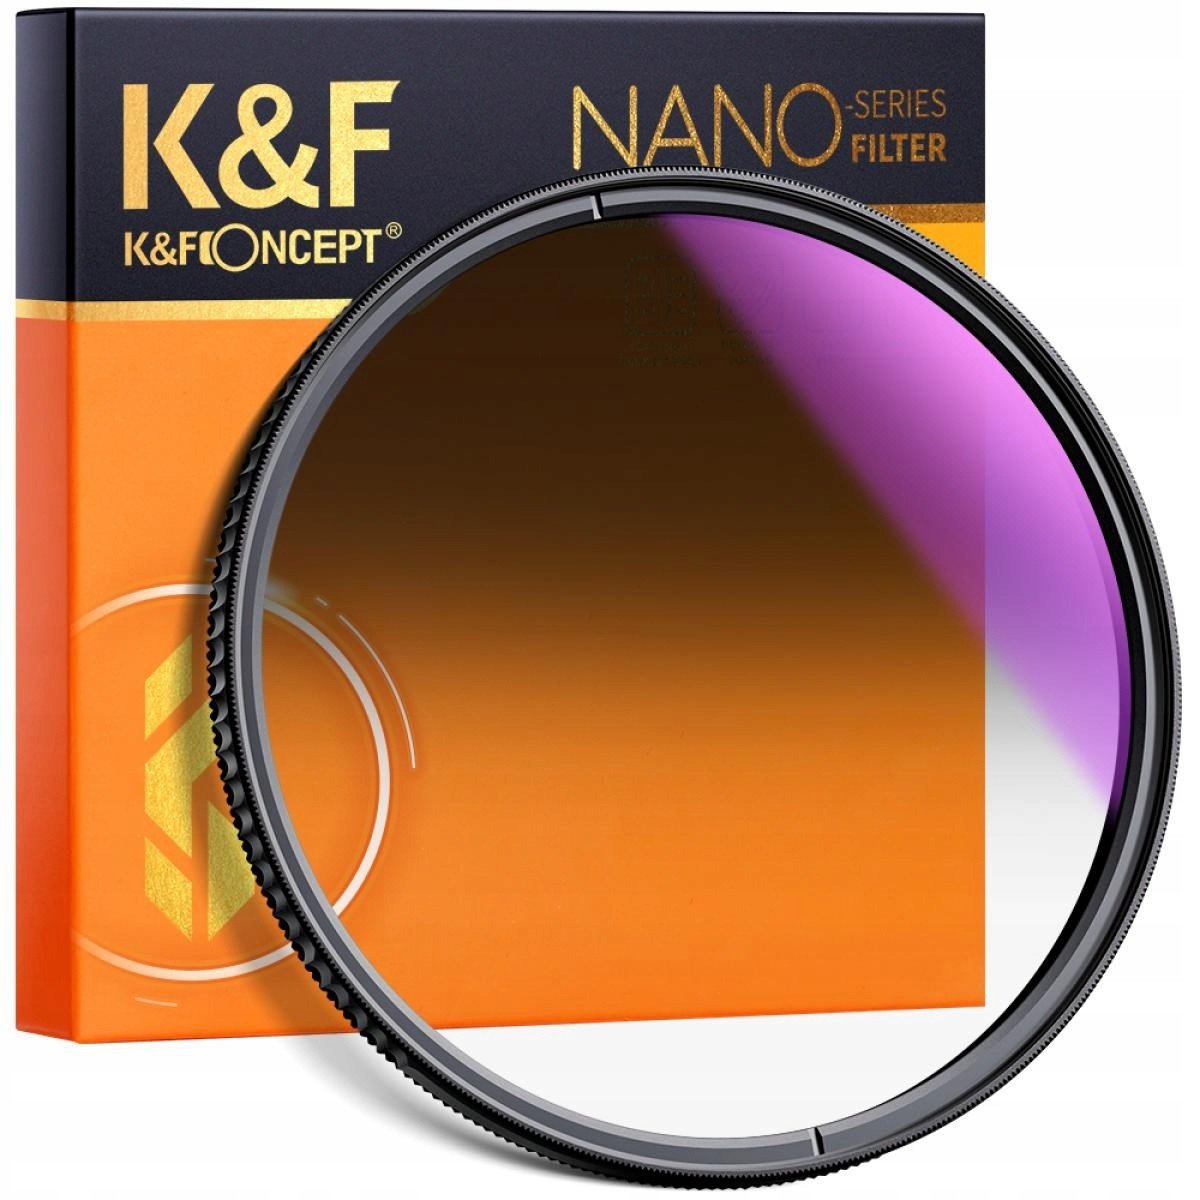 K&f Filtr šedý NanoX GND8 Soft 72mm